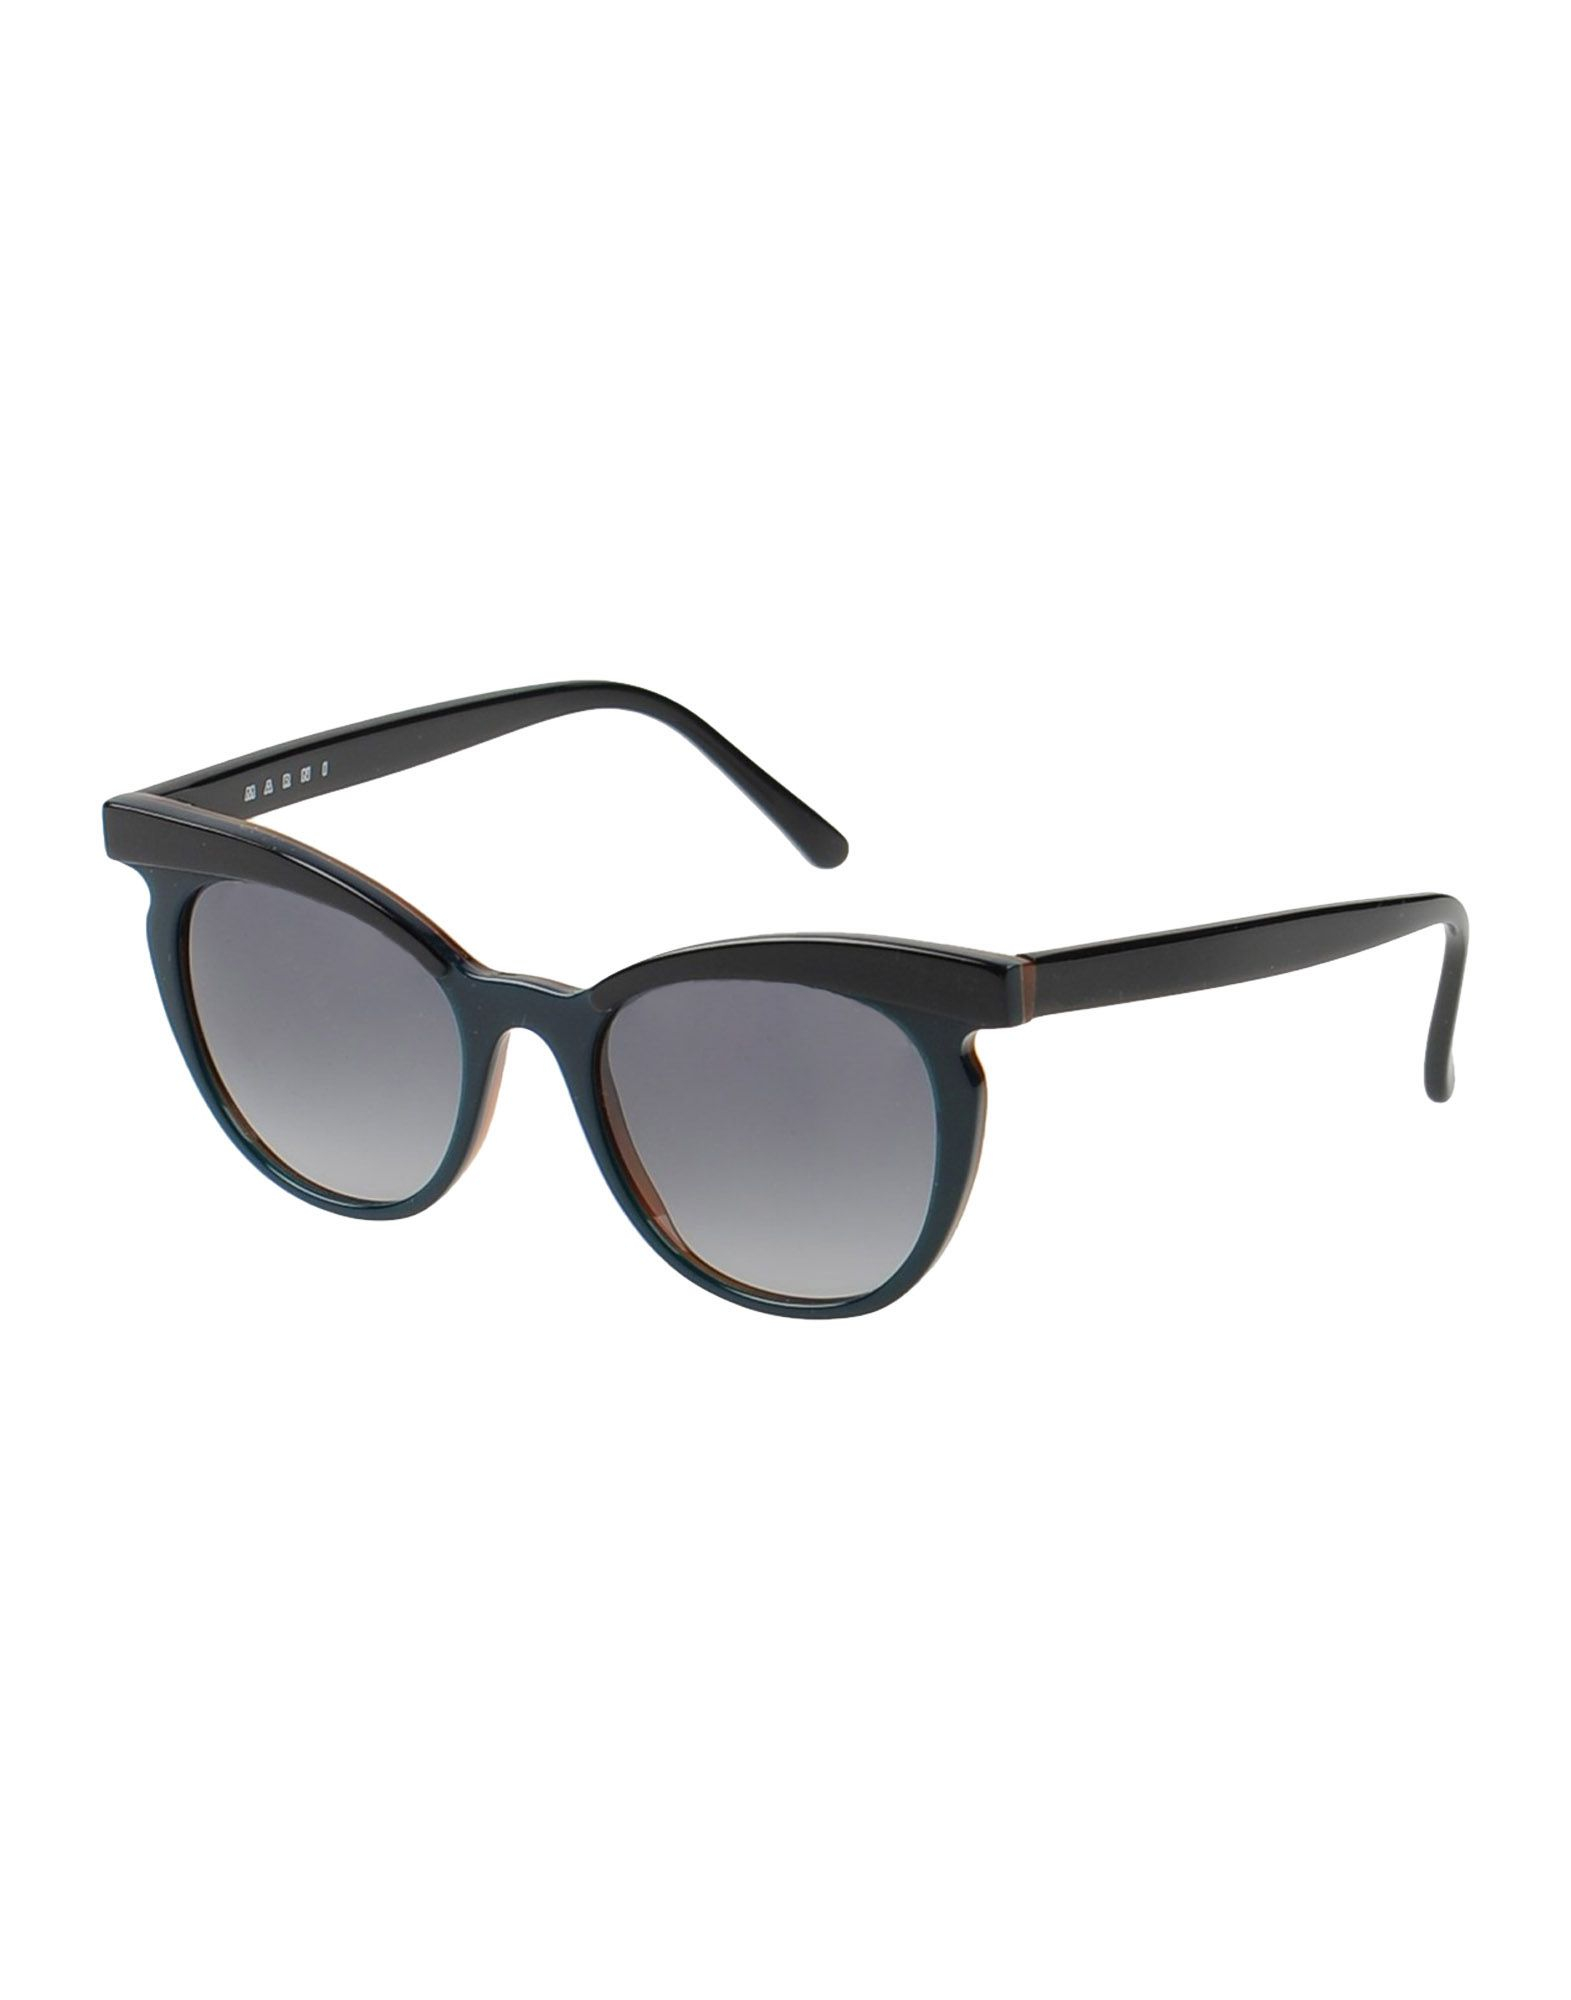 Marni Sunglasses in Black | Lyst